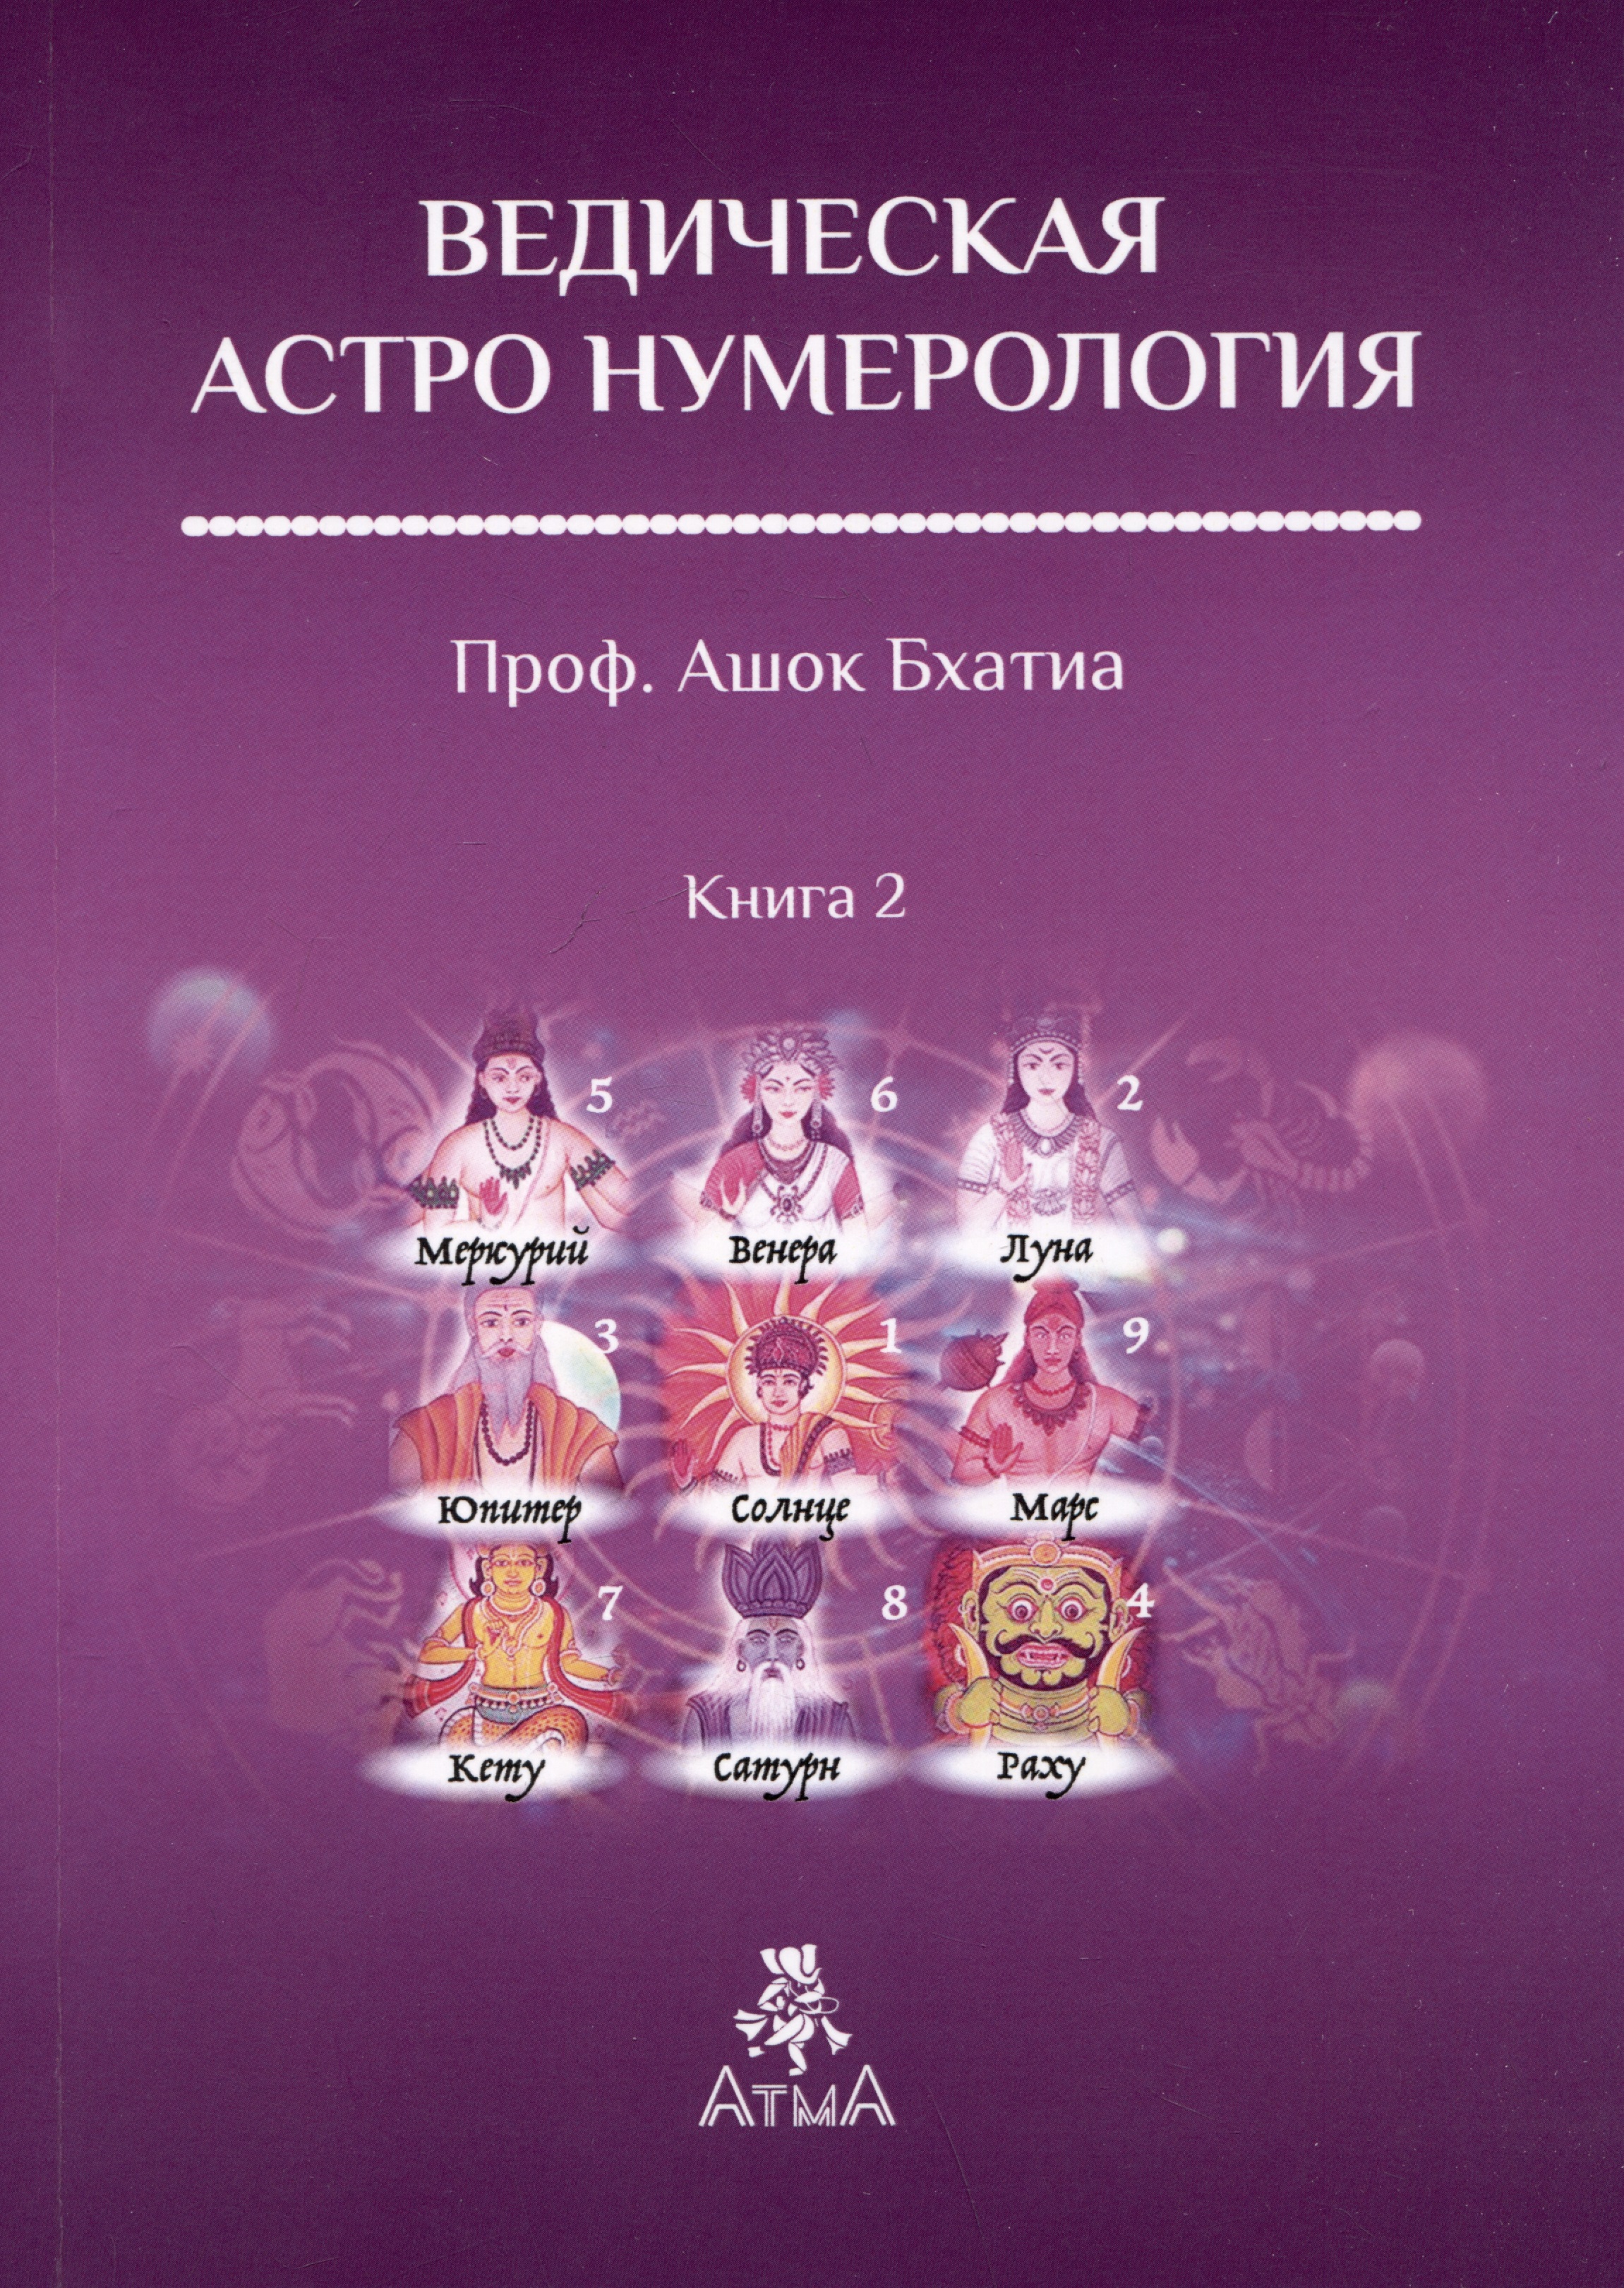 Бхатия Ашок Ведическая Астро Нумерология. Книга 2 определение болезни через астрологию